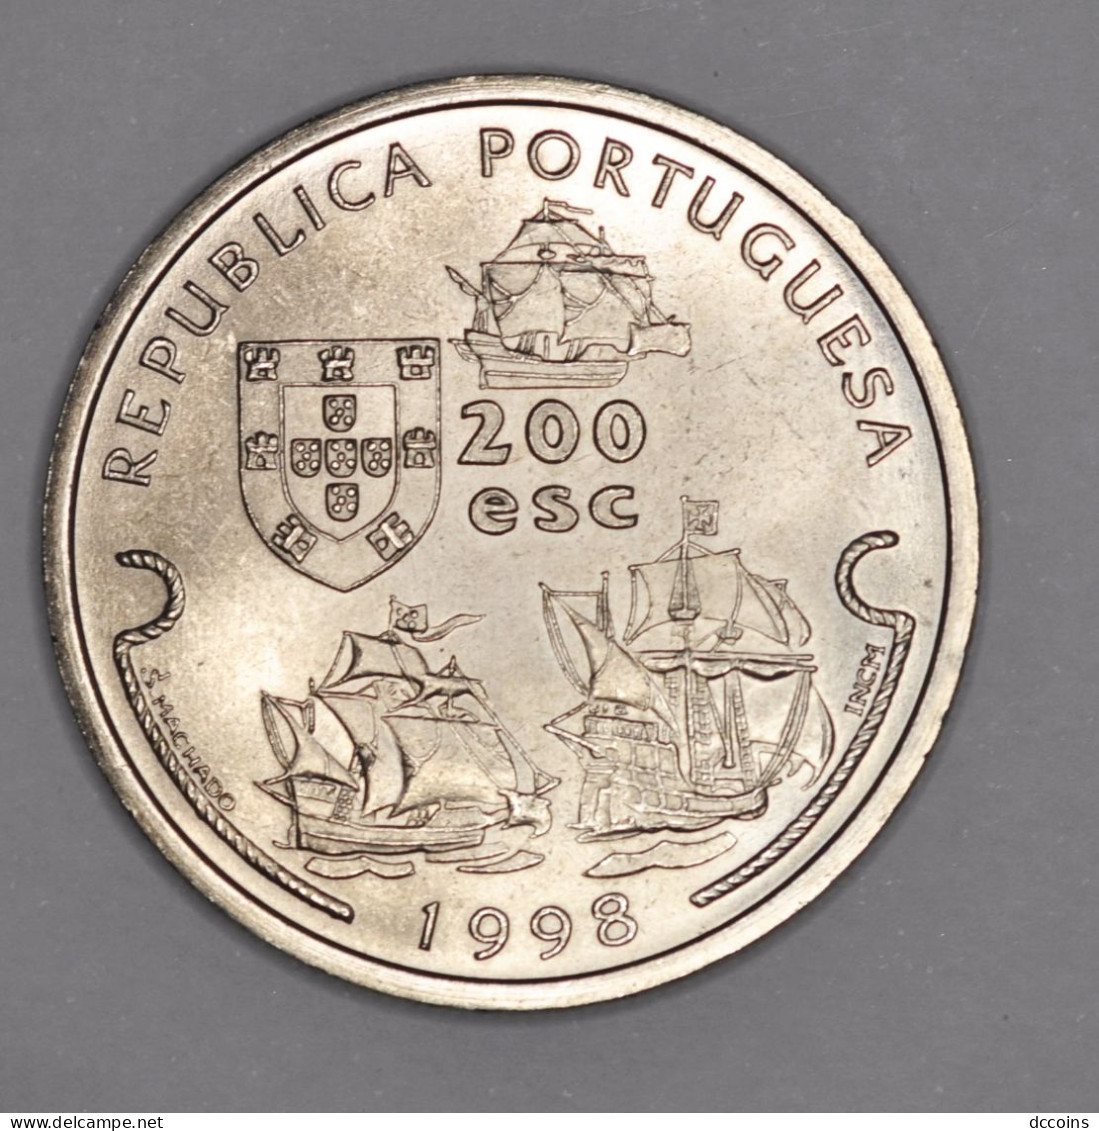 Descobrimentos Portugueses 9ª Serie 200  Esc. Vasco Da Gama Year 1998 - Portugal